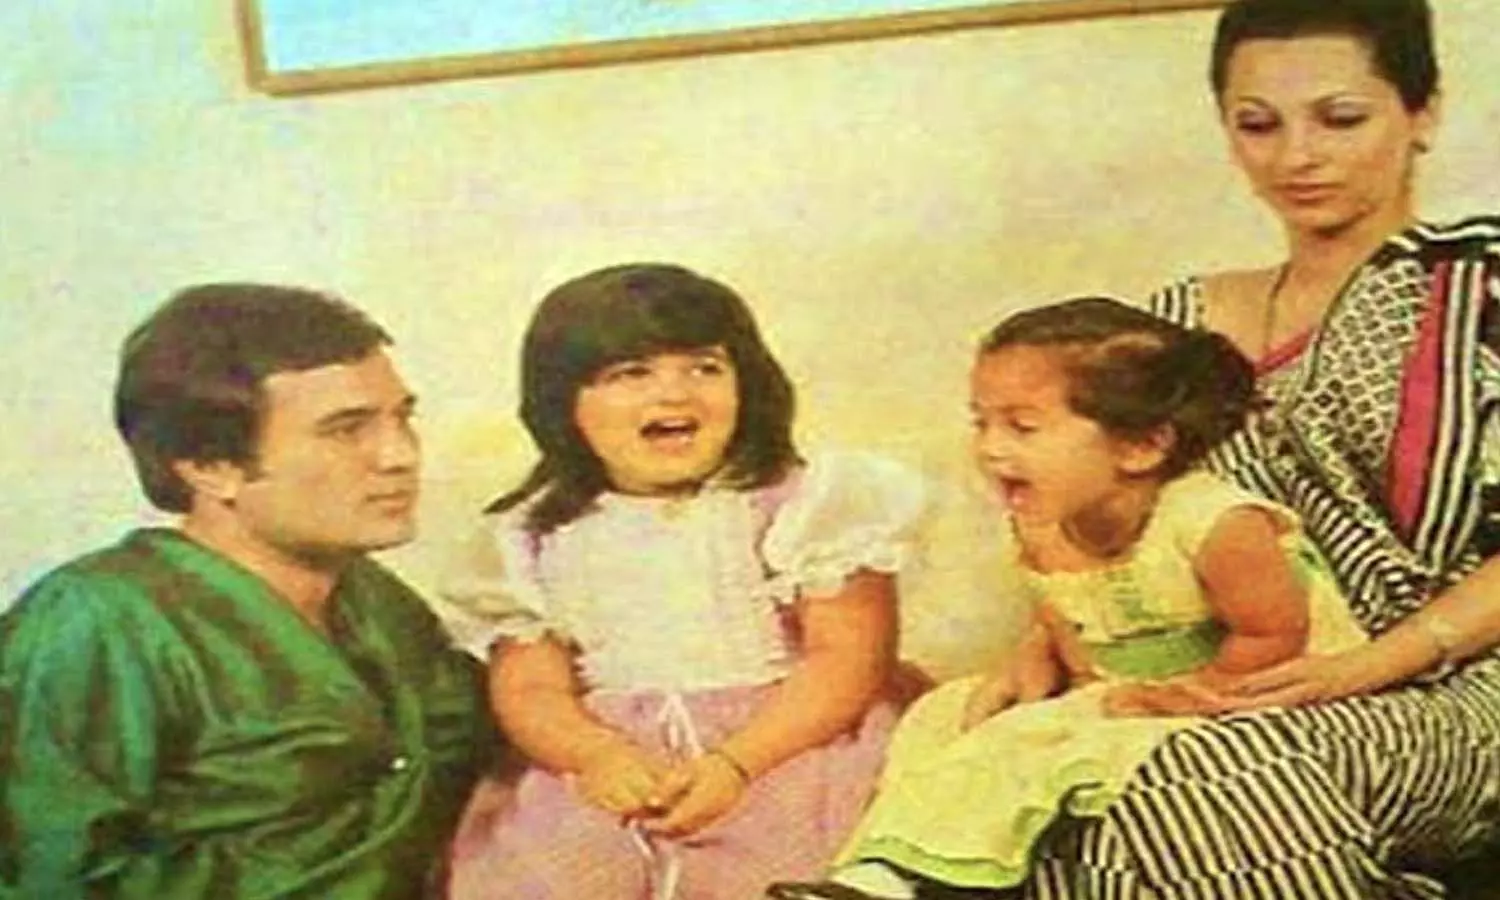  डिंपल कपाड़िया, राजेश खन्ना और उनकी दोनों बेटियां 